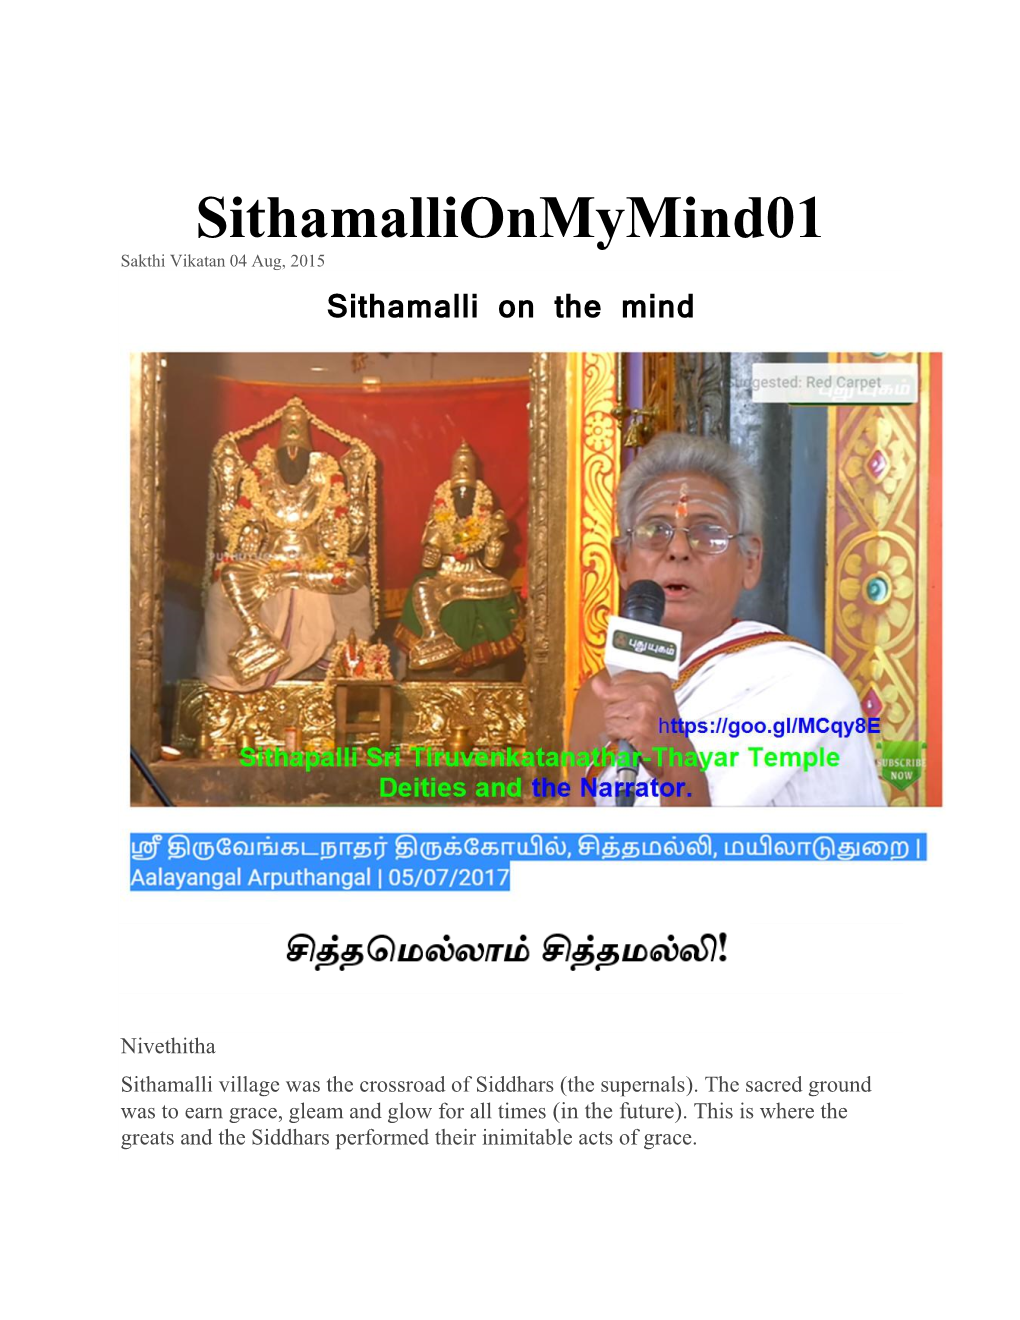 Sithamalli on the Mind